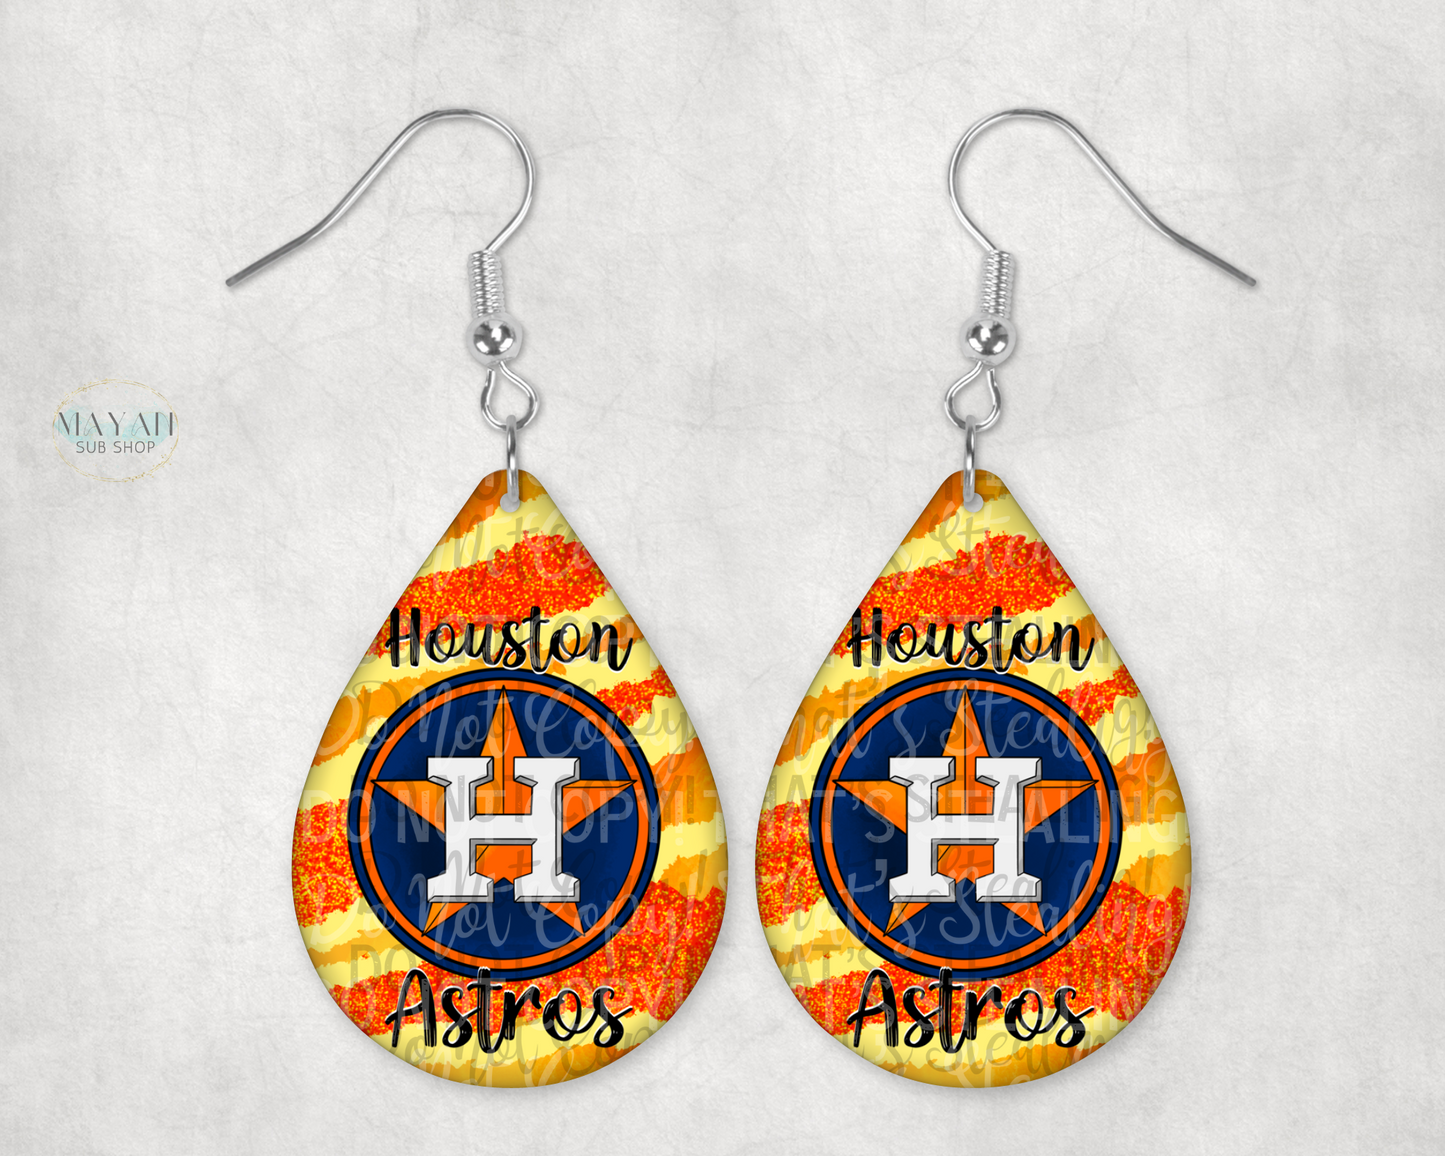 Houston baseball earrings. -Mayan Sub Shop